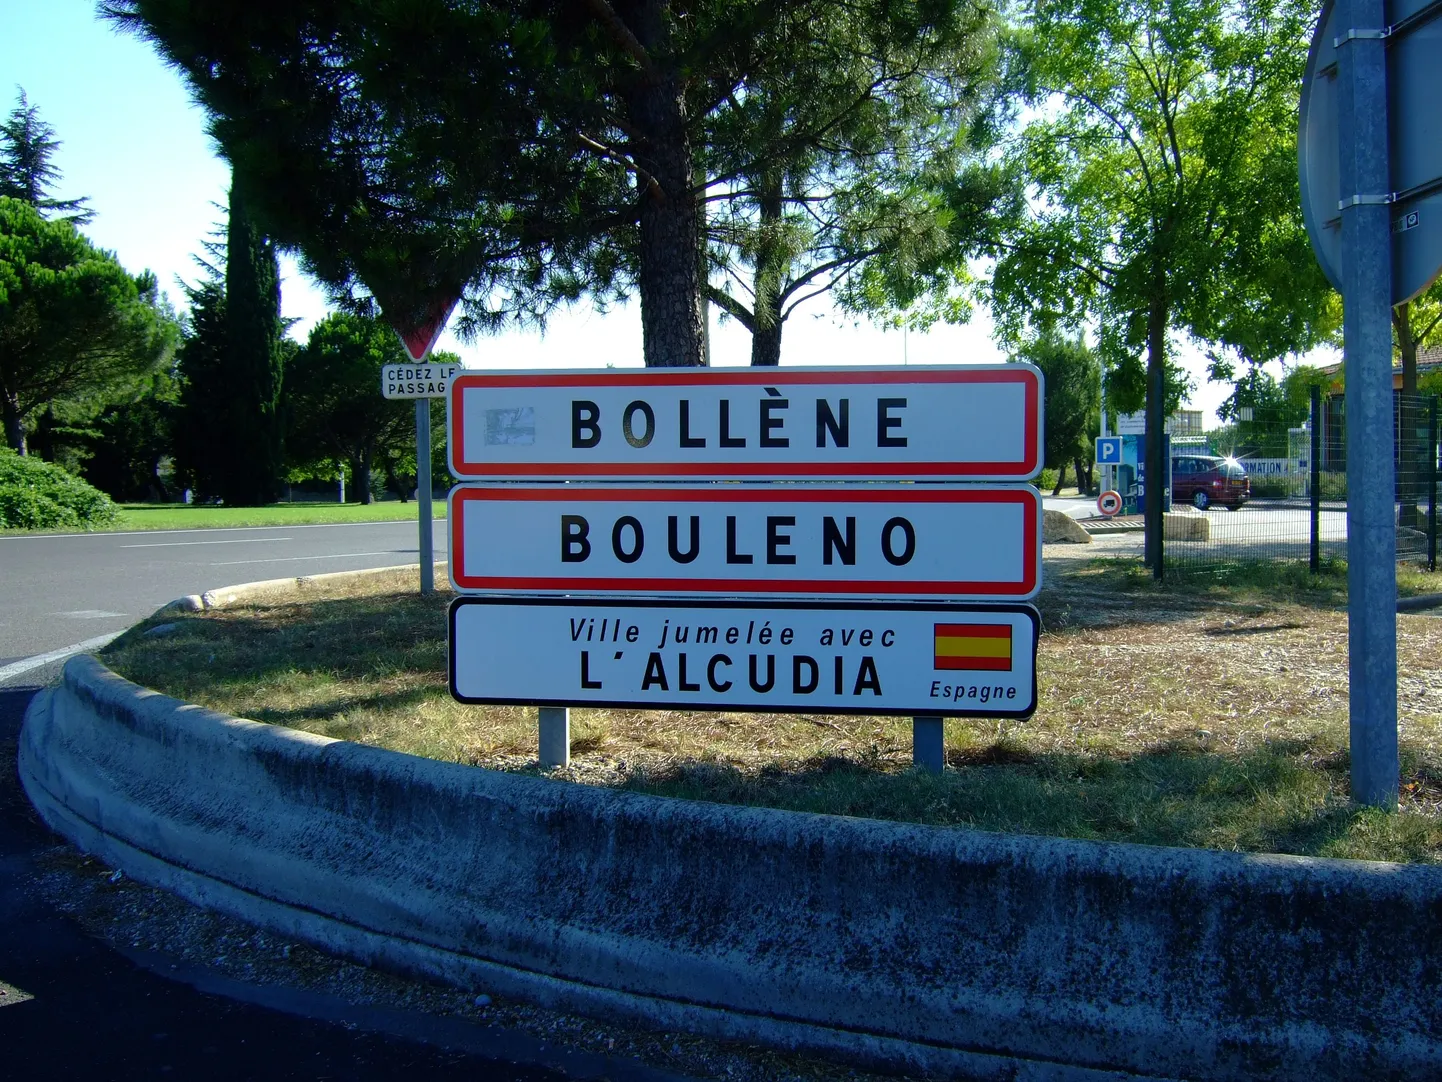 Lõuna-Prantsusmaa linna Bollène külastamine jääb saare noortele eredalt meelde.